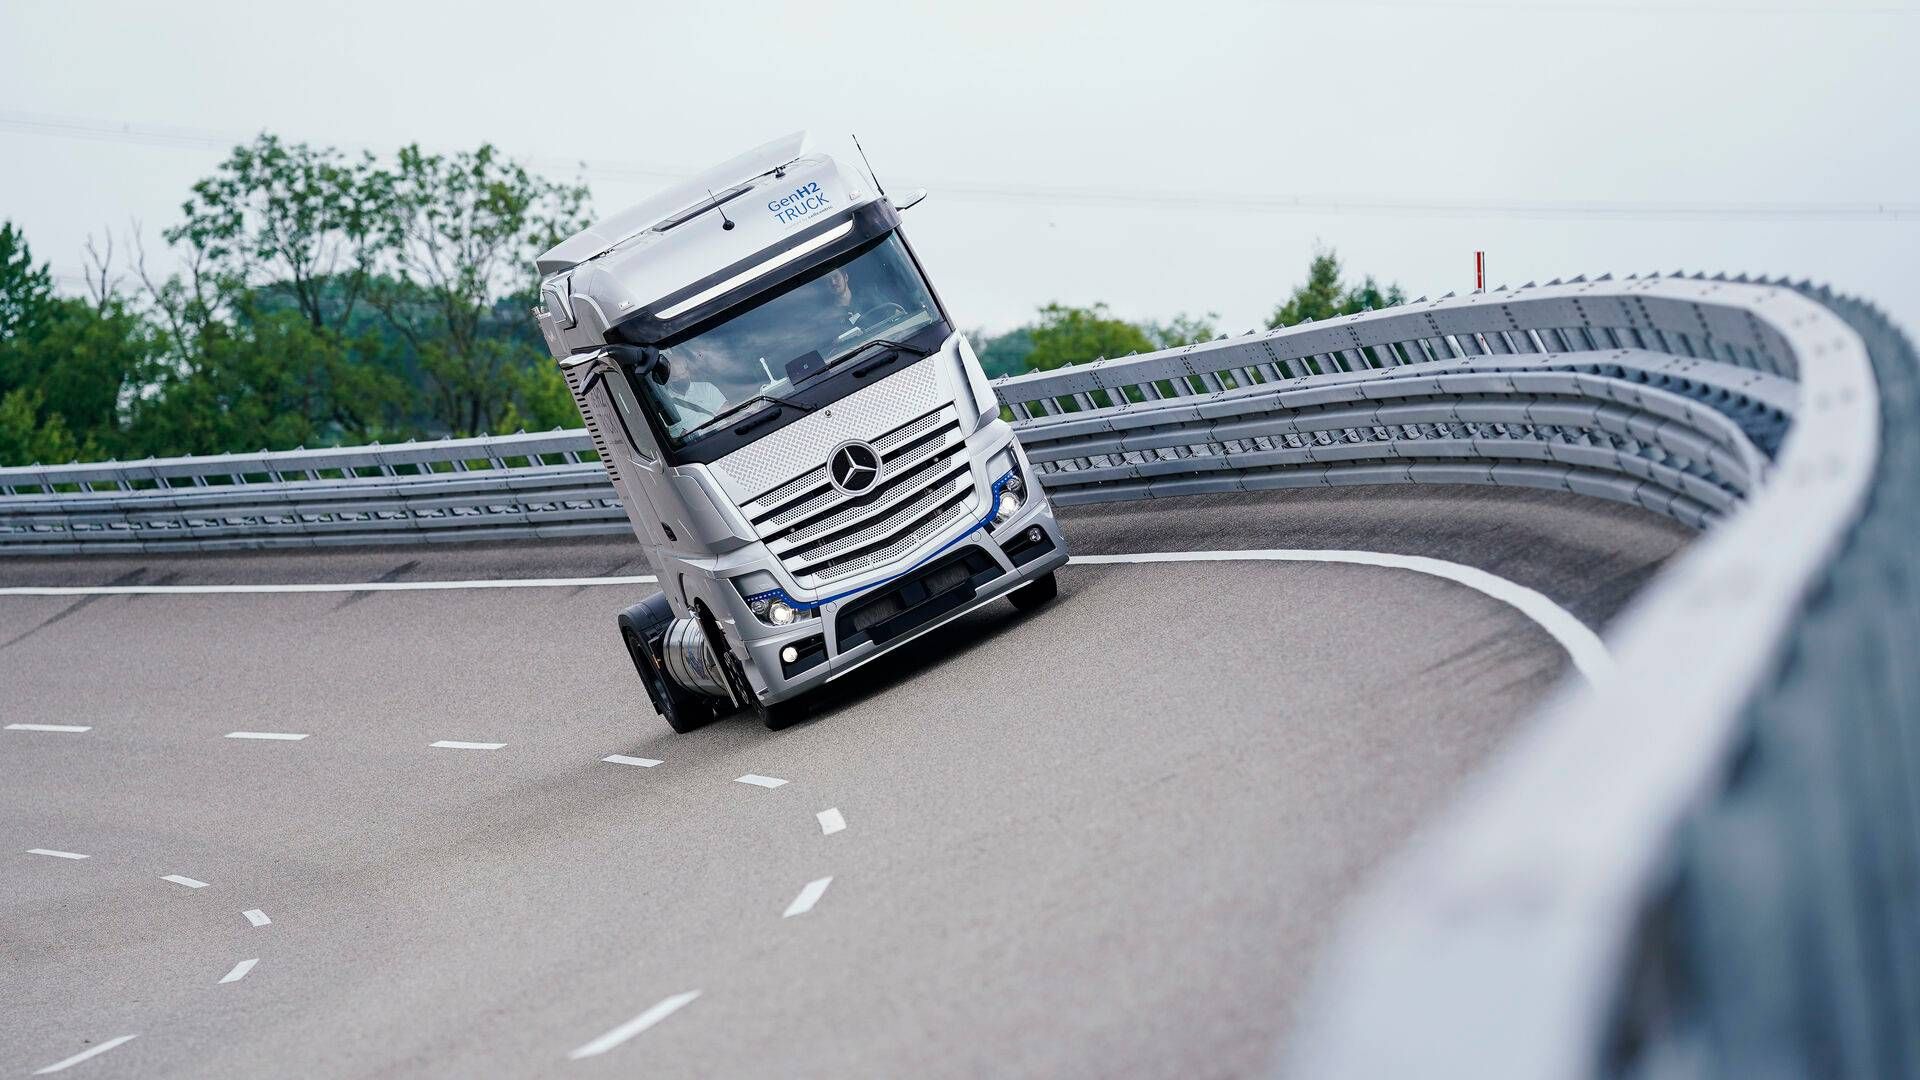 Daimler regner nu med at sælge mellem 530.000 og 550.000 lastbiler i år. Tidligere var forventningerne lavere. | Foto: Uwe Anspach/AP/Ritzau Scanpix